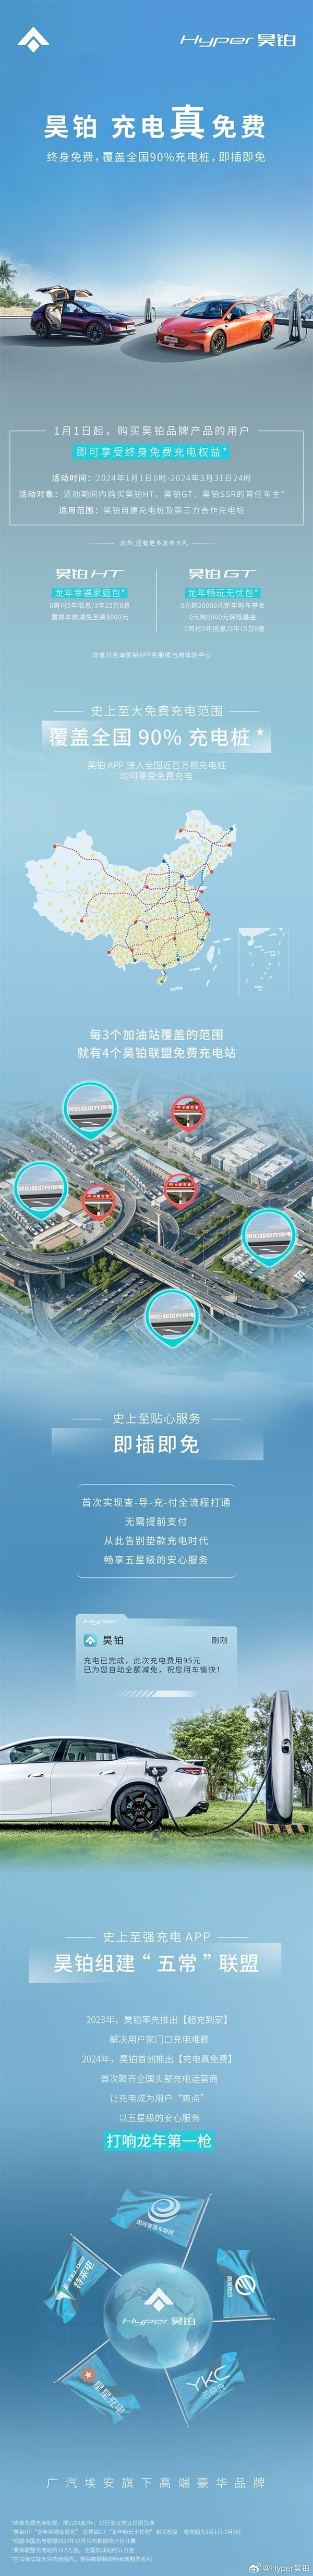 广汽埃安昊铂推出终身免费充电权益 涵盖全国90%充电桩